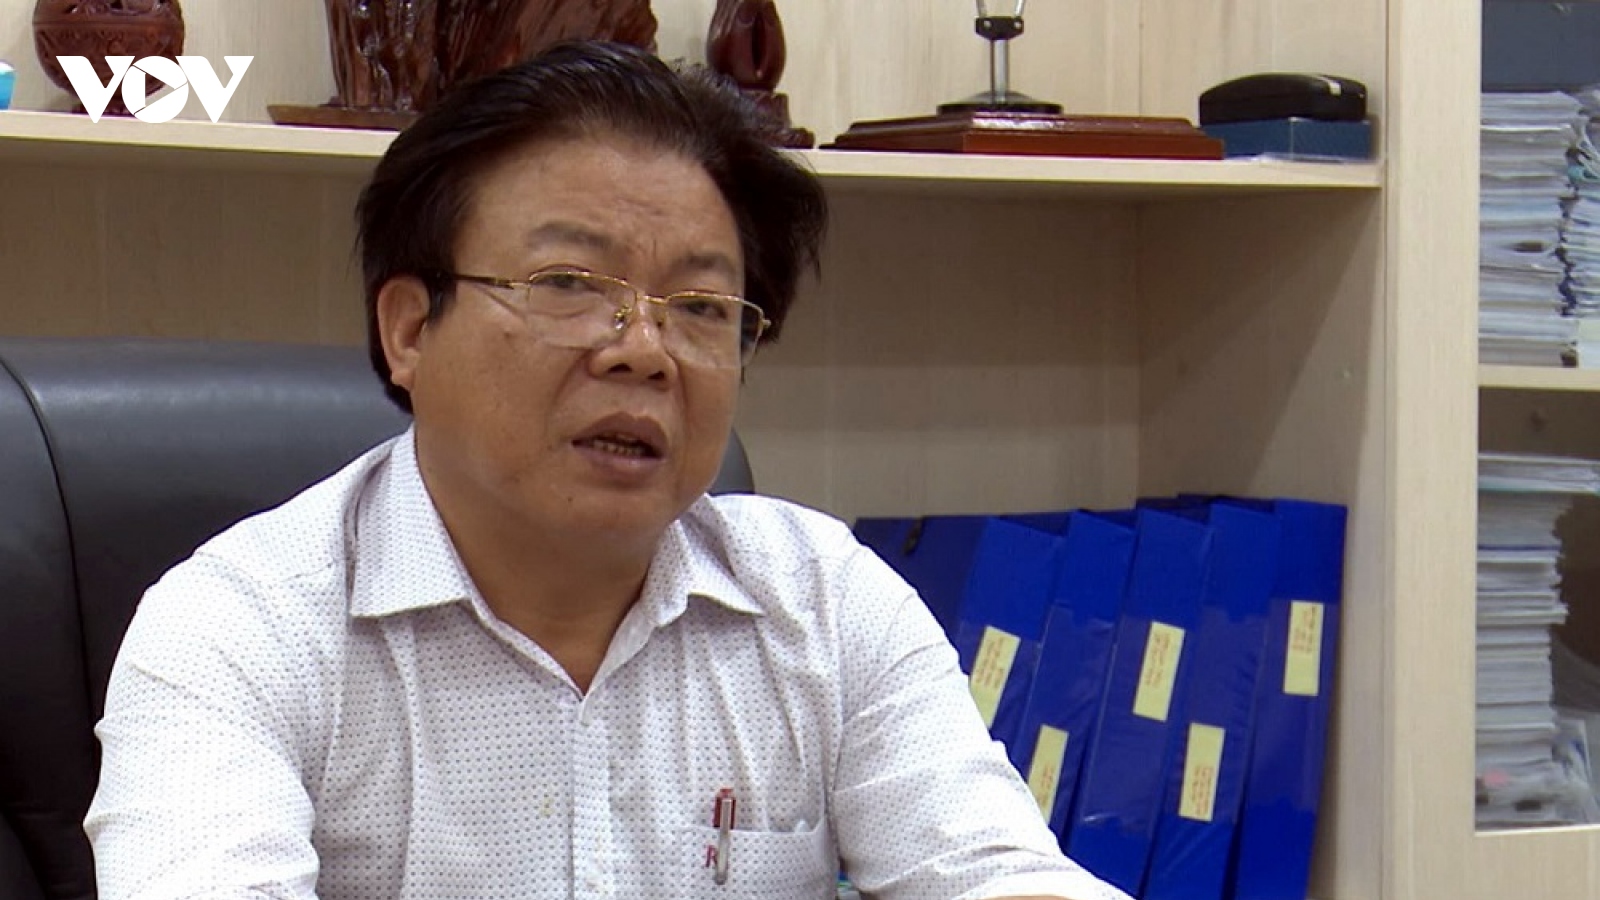 Không đủ uy tín để giữ vị trí, Giám đốc Sở GD&ĐT tỉnh Quảng Nam được cho nghỉ trước tuổi